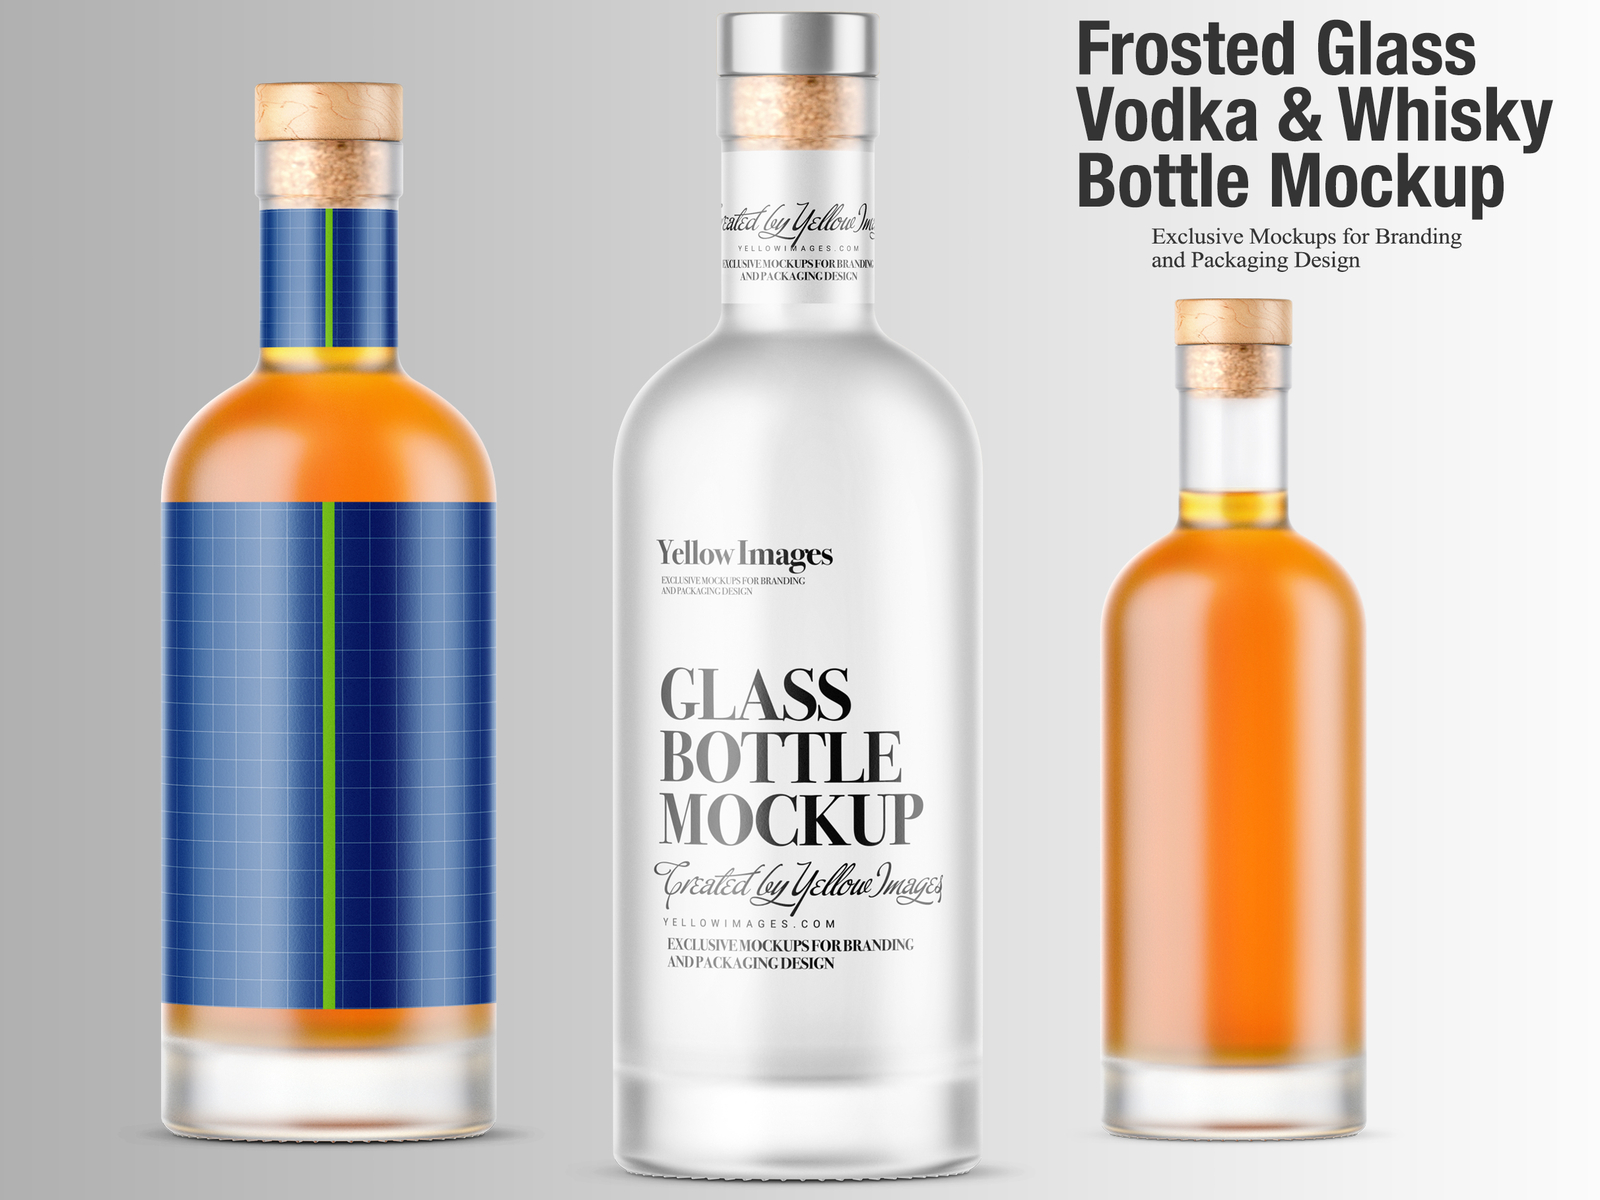 Download Frosted Glass Vodka & Whisky Bottle Mockups by Oleksandr Hlubokyi on Dribbble